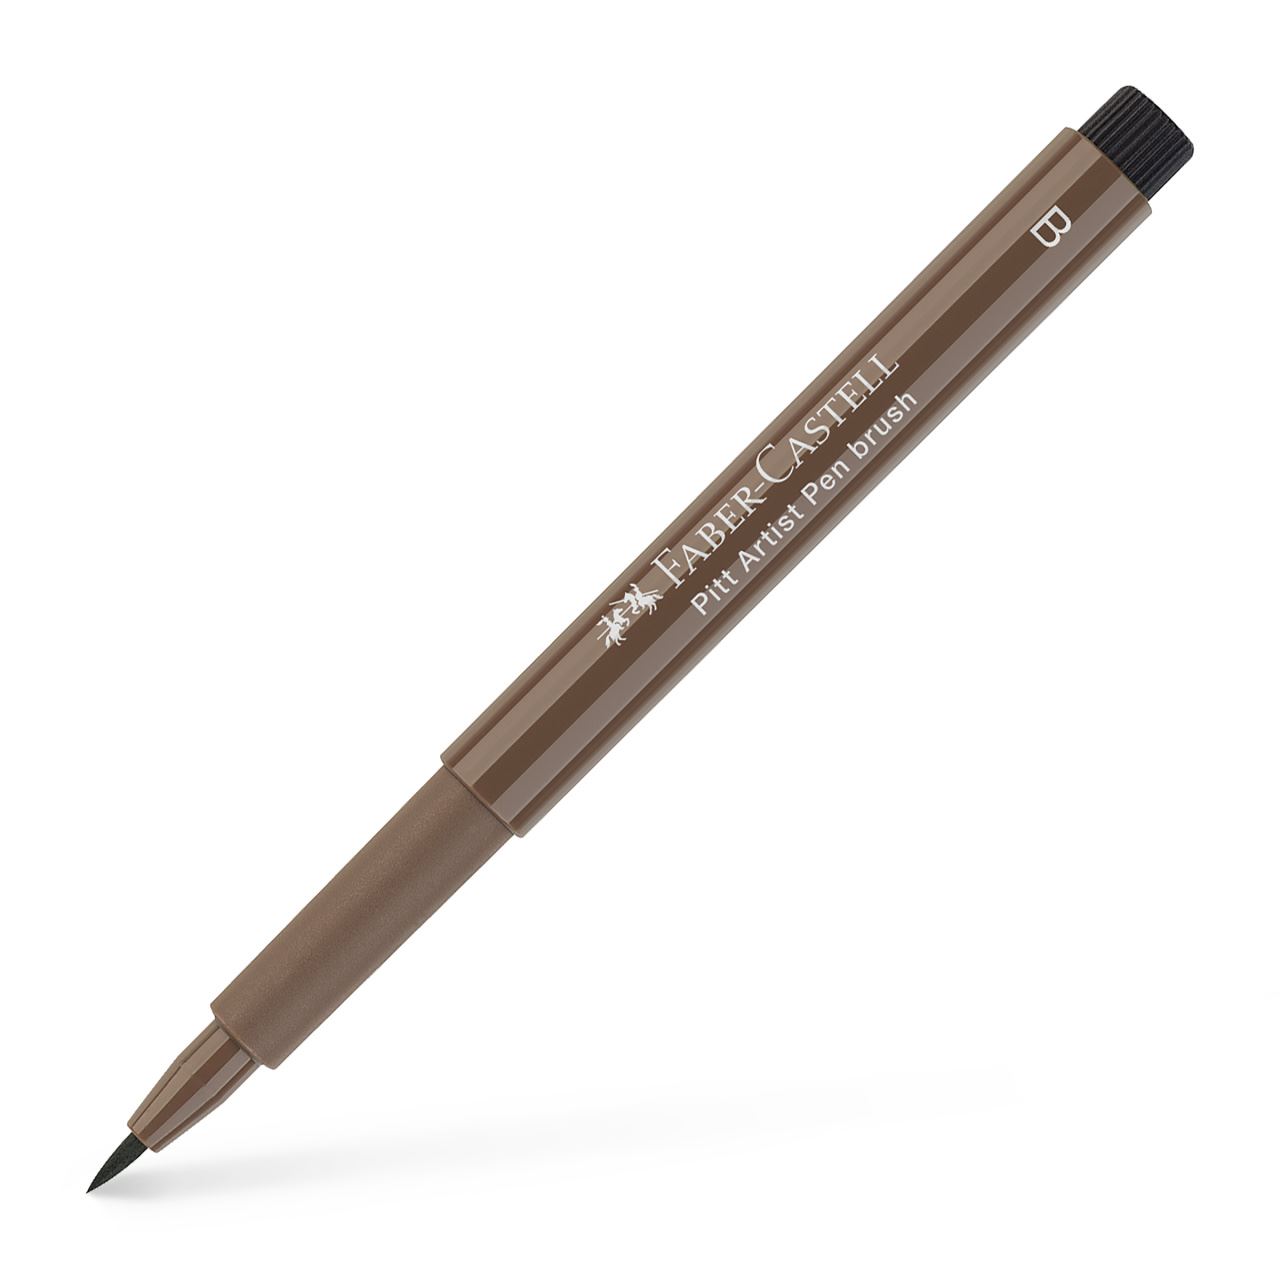 Faber-Castell - Pitt Artist Pen Brush Tuschestift, walnußbraun